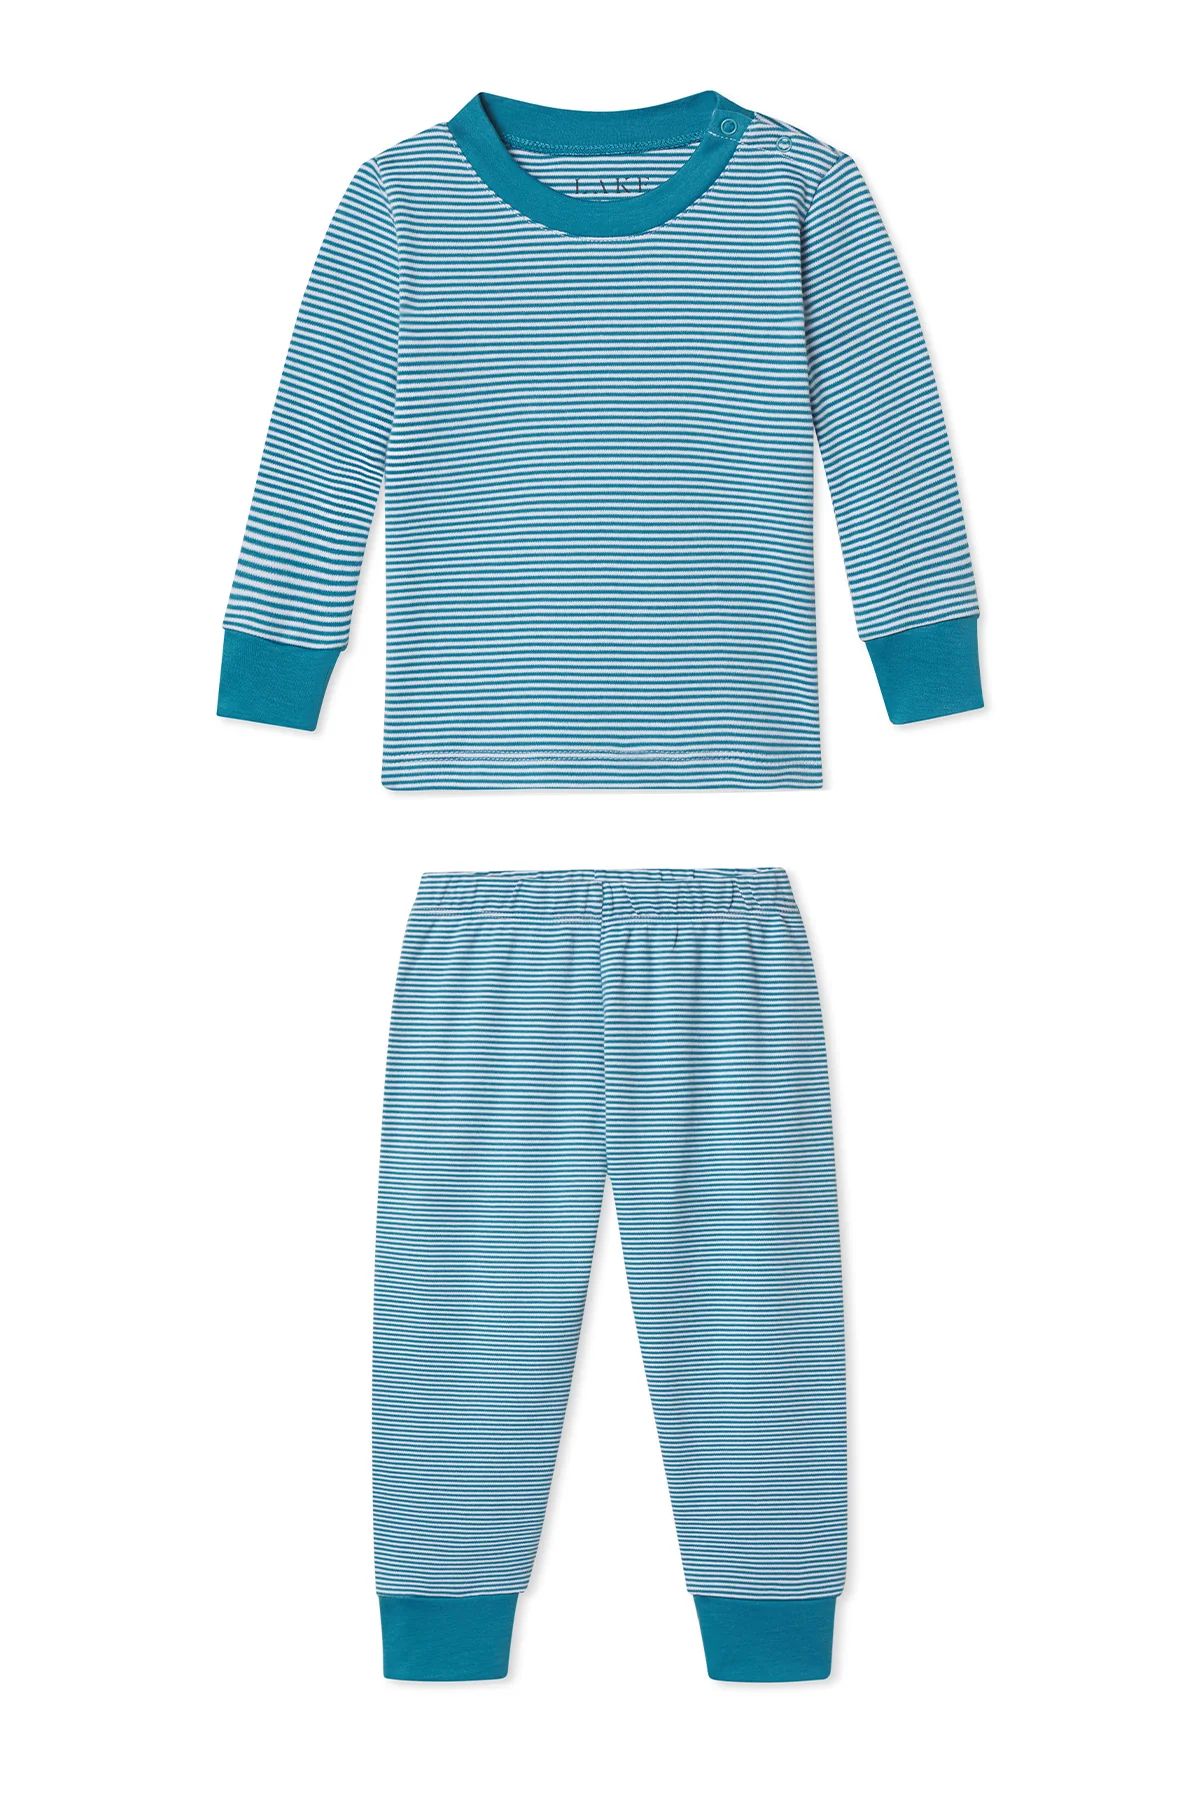 Baby Long-Long Set in Celestial | LAKE Pajamas